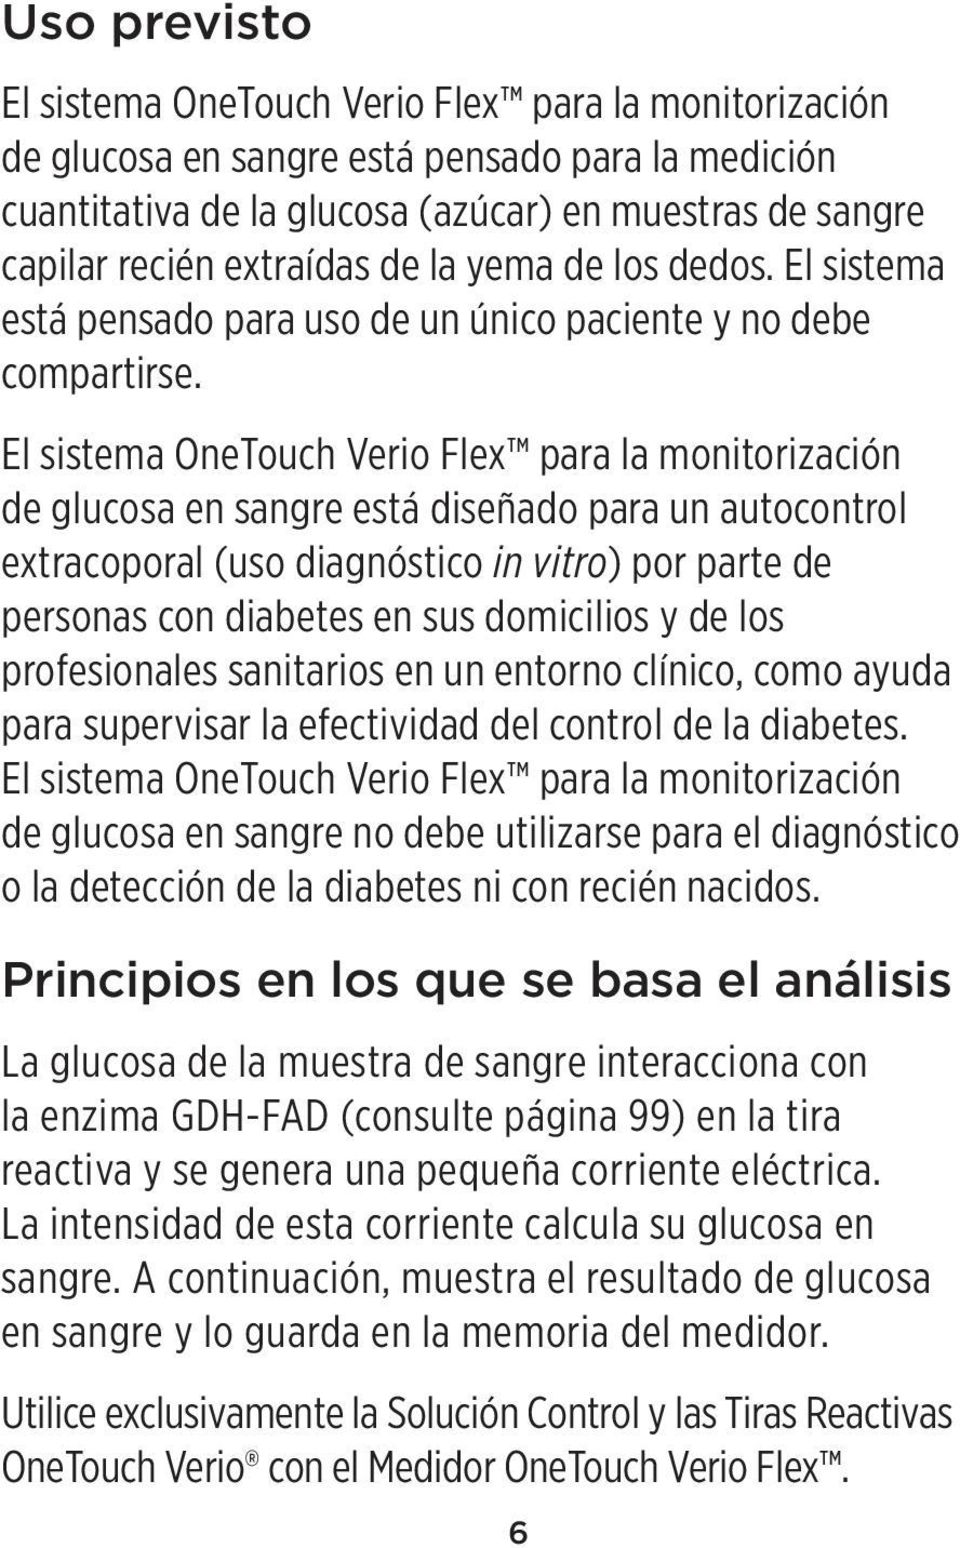 El sistema OneTouch Verio Flex para la monitorización de glucosa en sangre está diseñado para un autocontrol extracoporal (uso diagnóstico in vitro) por parte de personas con diabetes en sus